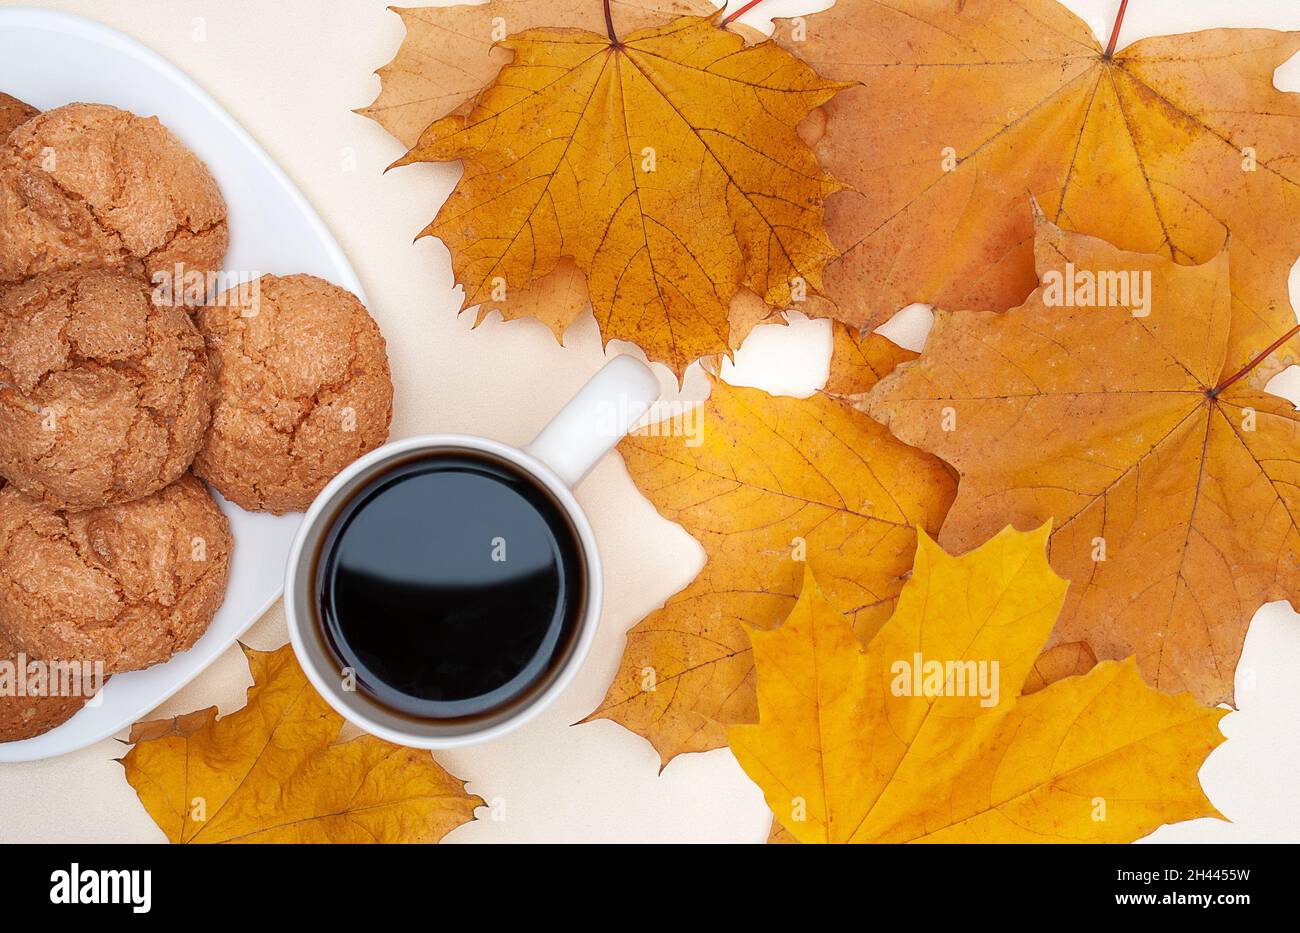 piatto di foglie di acero giallo autunno, tazza con tè caldo, piatto bianco con biscotti su sfondo avorio Foto Stock